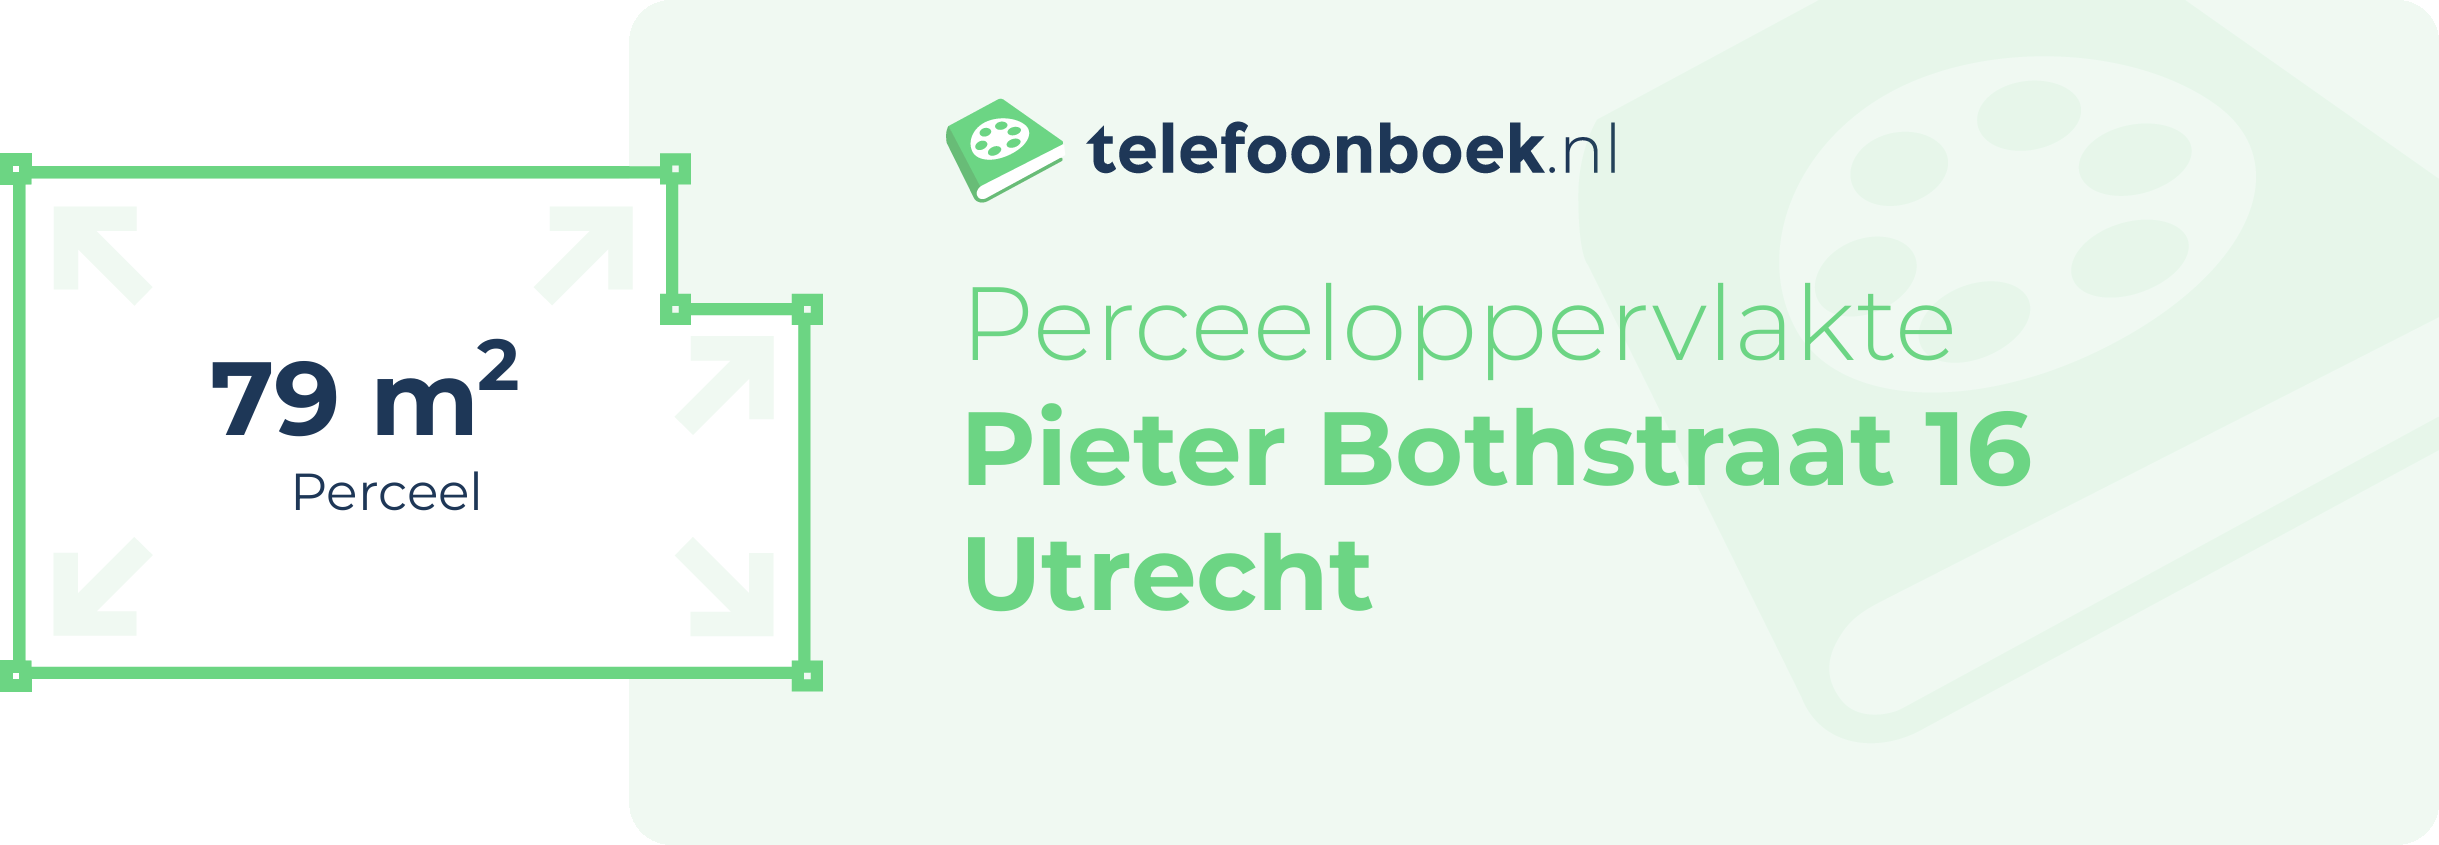 Perceeloppervlakte Pieter Bothstraat 16 Utrecht